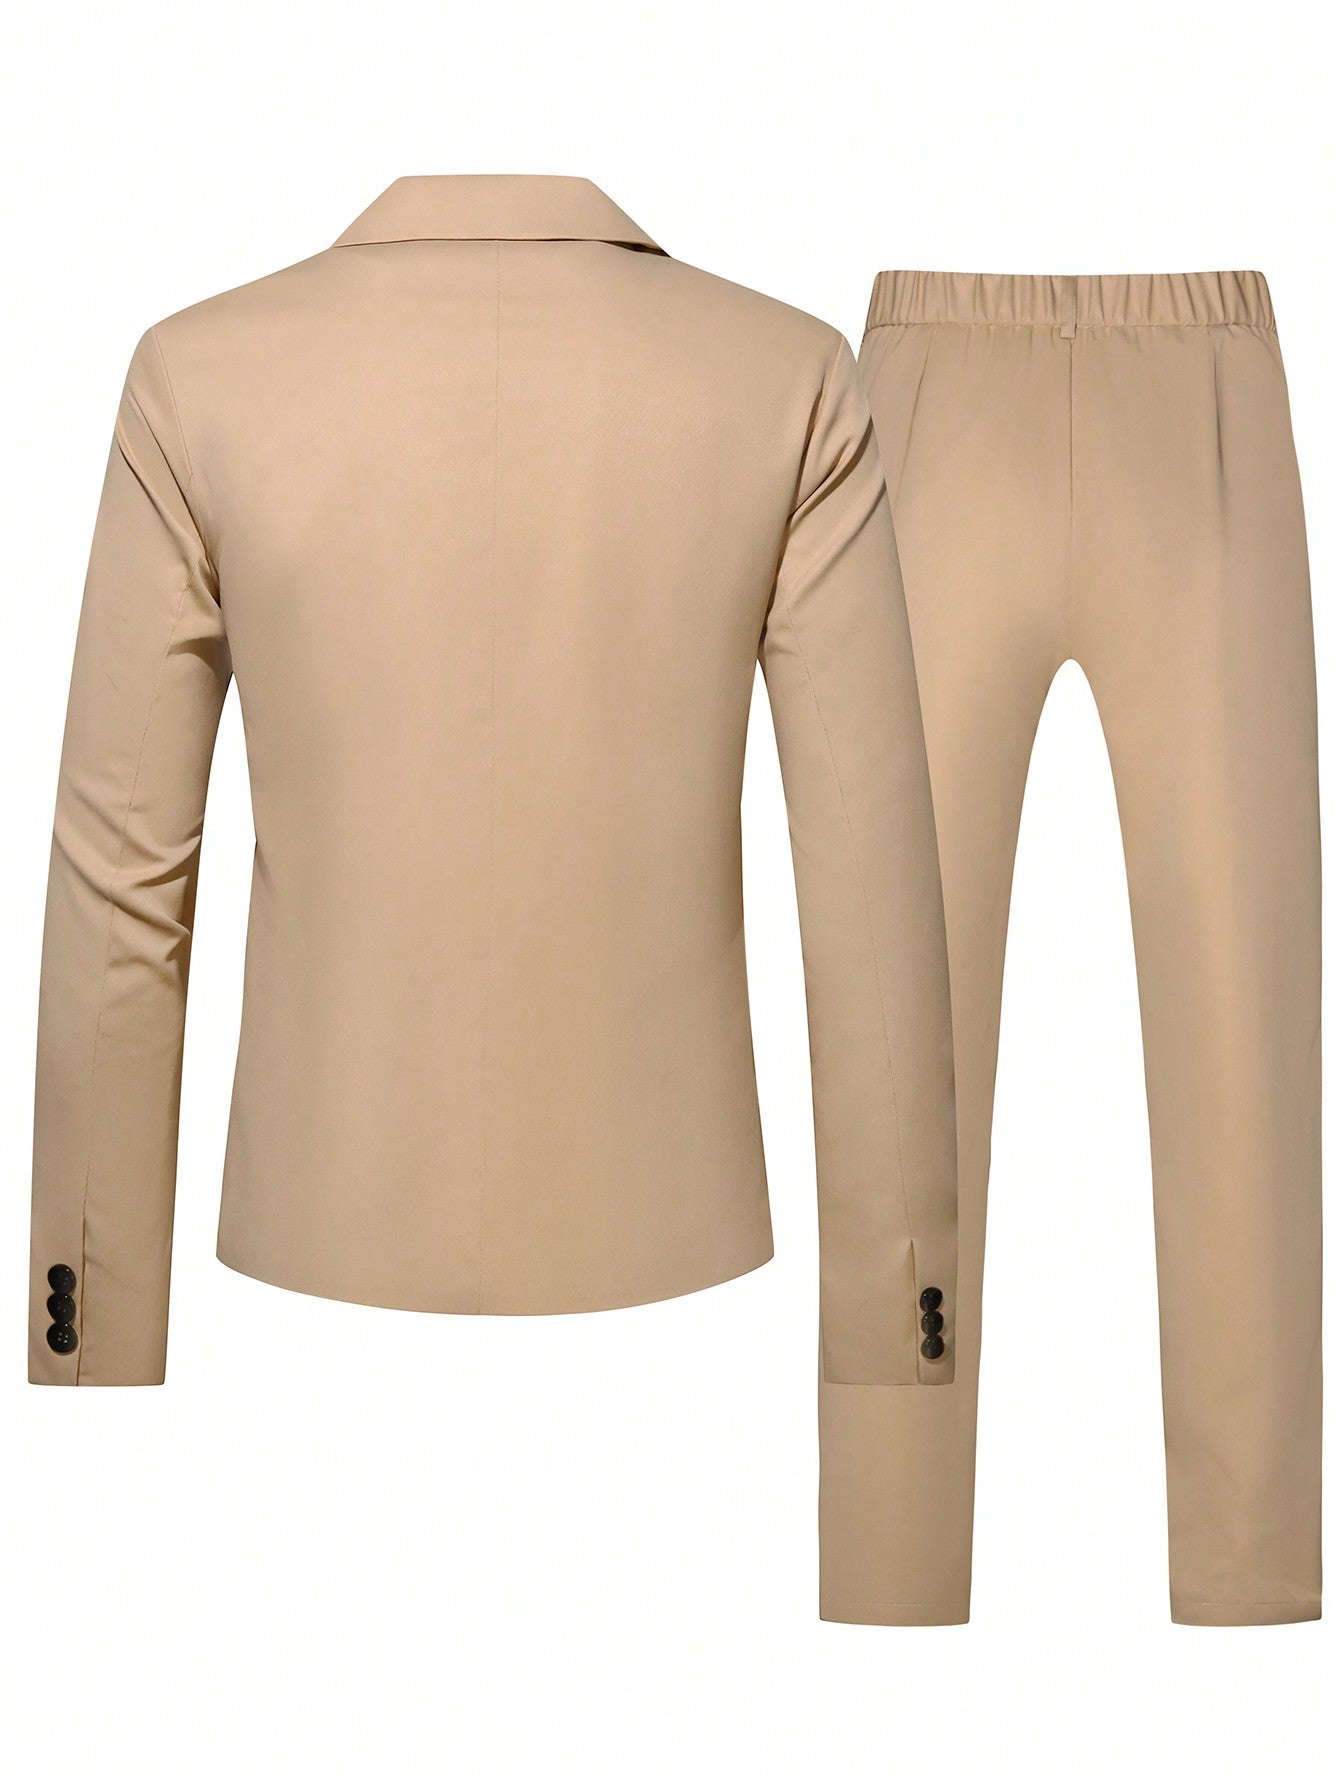 Manfinity Mode Men's Zipper Front Suit And Pants Set